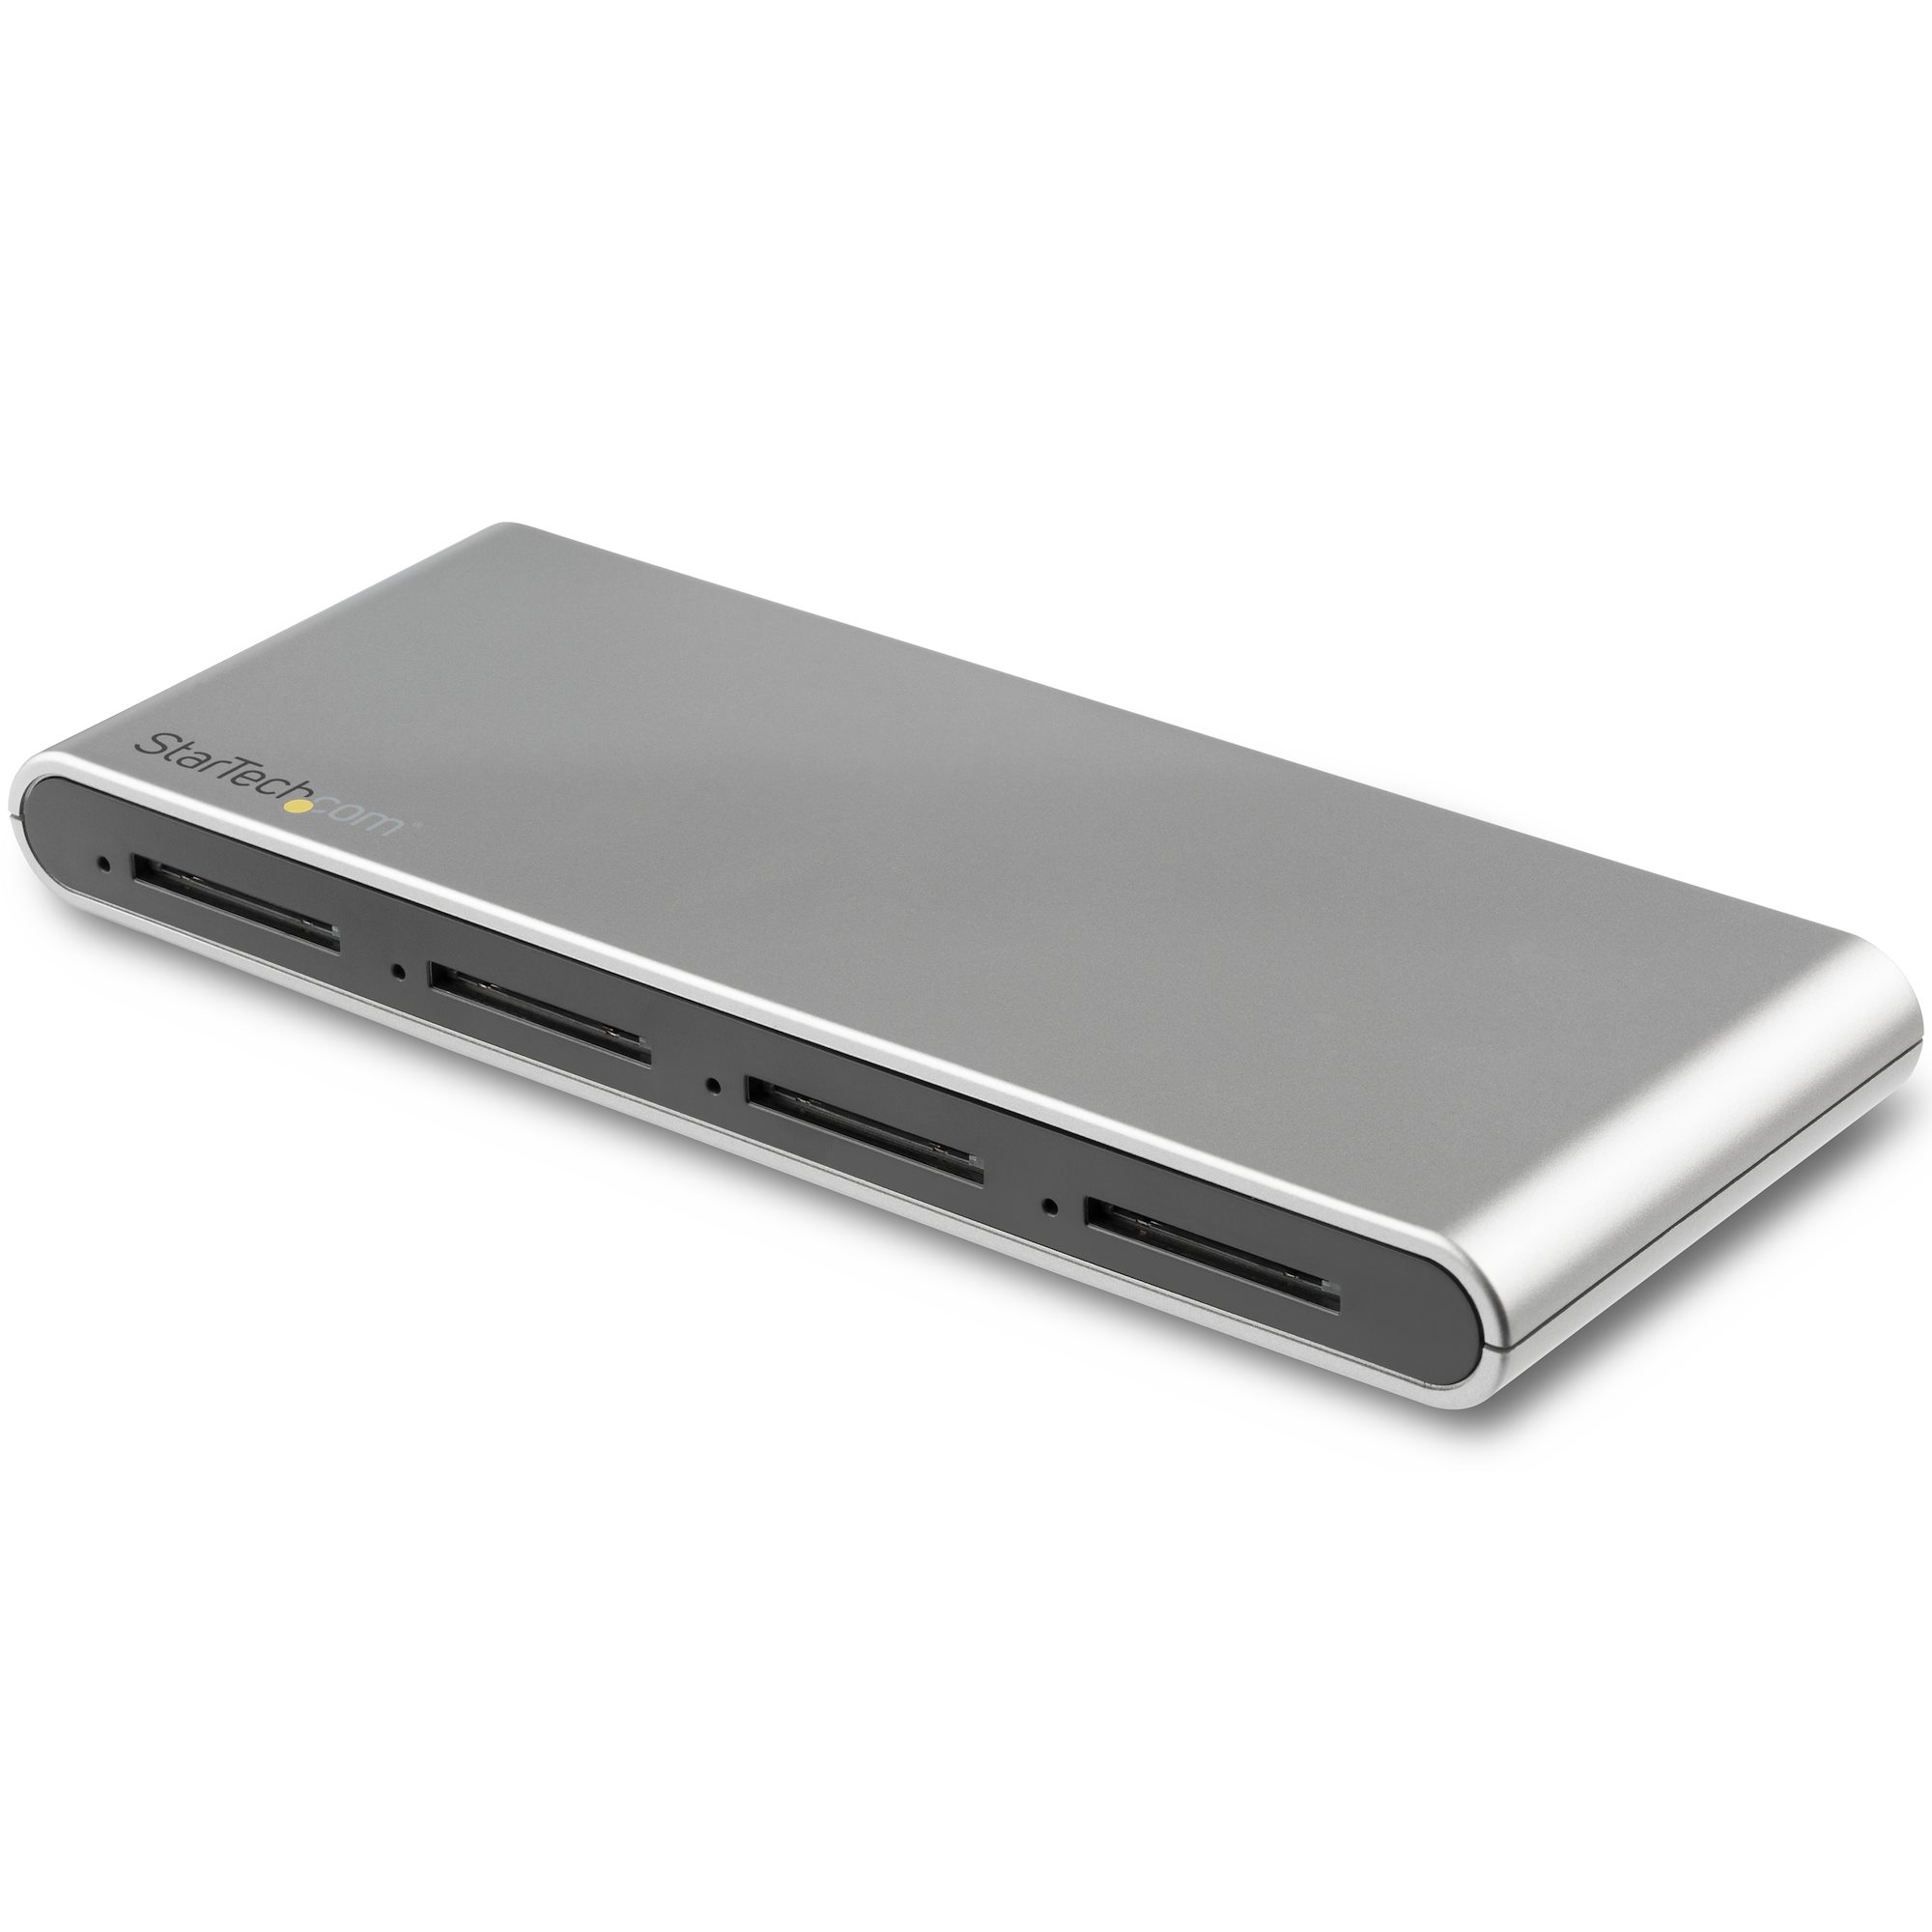 Lecteur et enregistreur multicartes USB 3.0 avec USB-C pour cartes mémoire  SD, microSD et CompactFlash